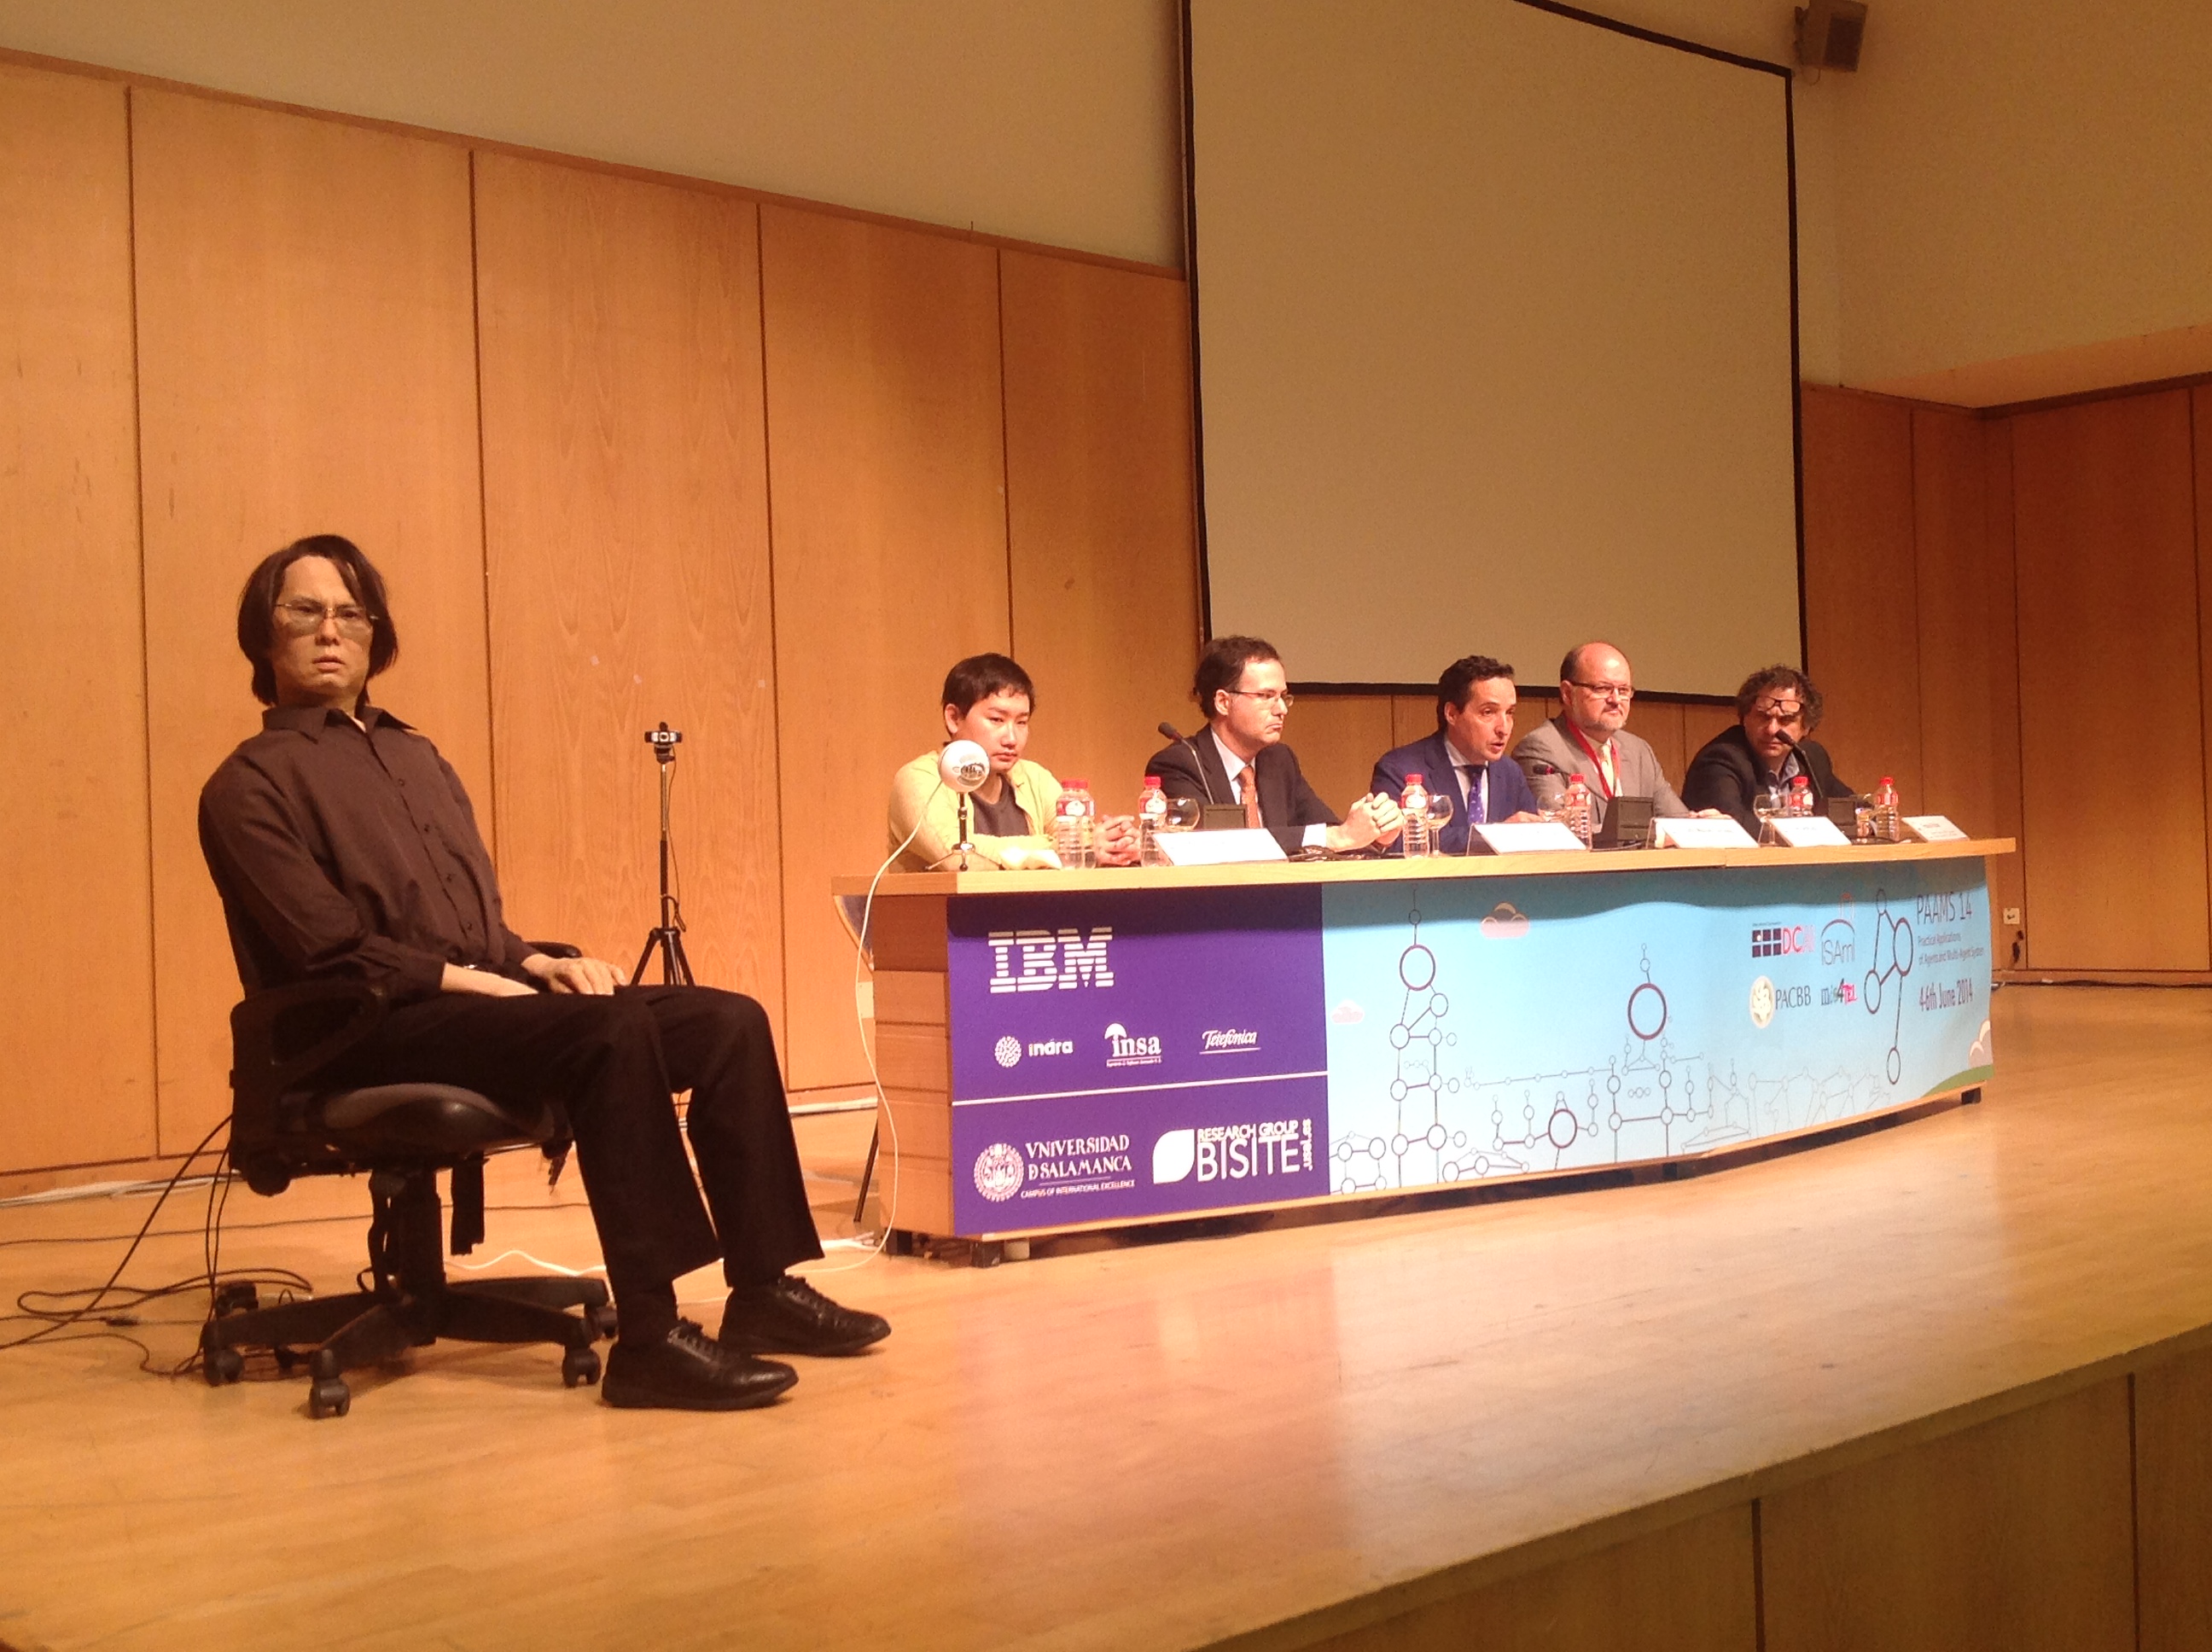 El clon cibernético de Hiroshi Ishiguro imparte una conferencia magistral dentro del congreso internacional PAAMS